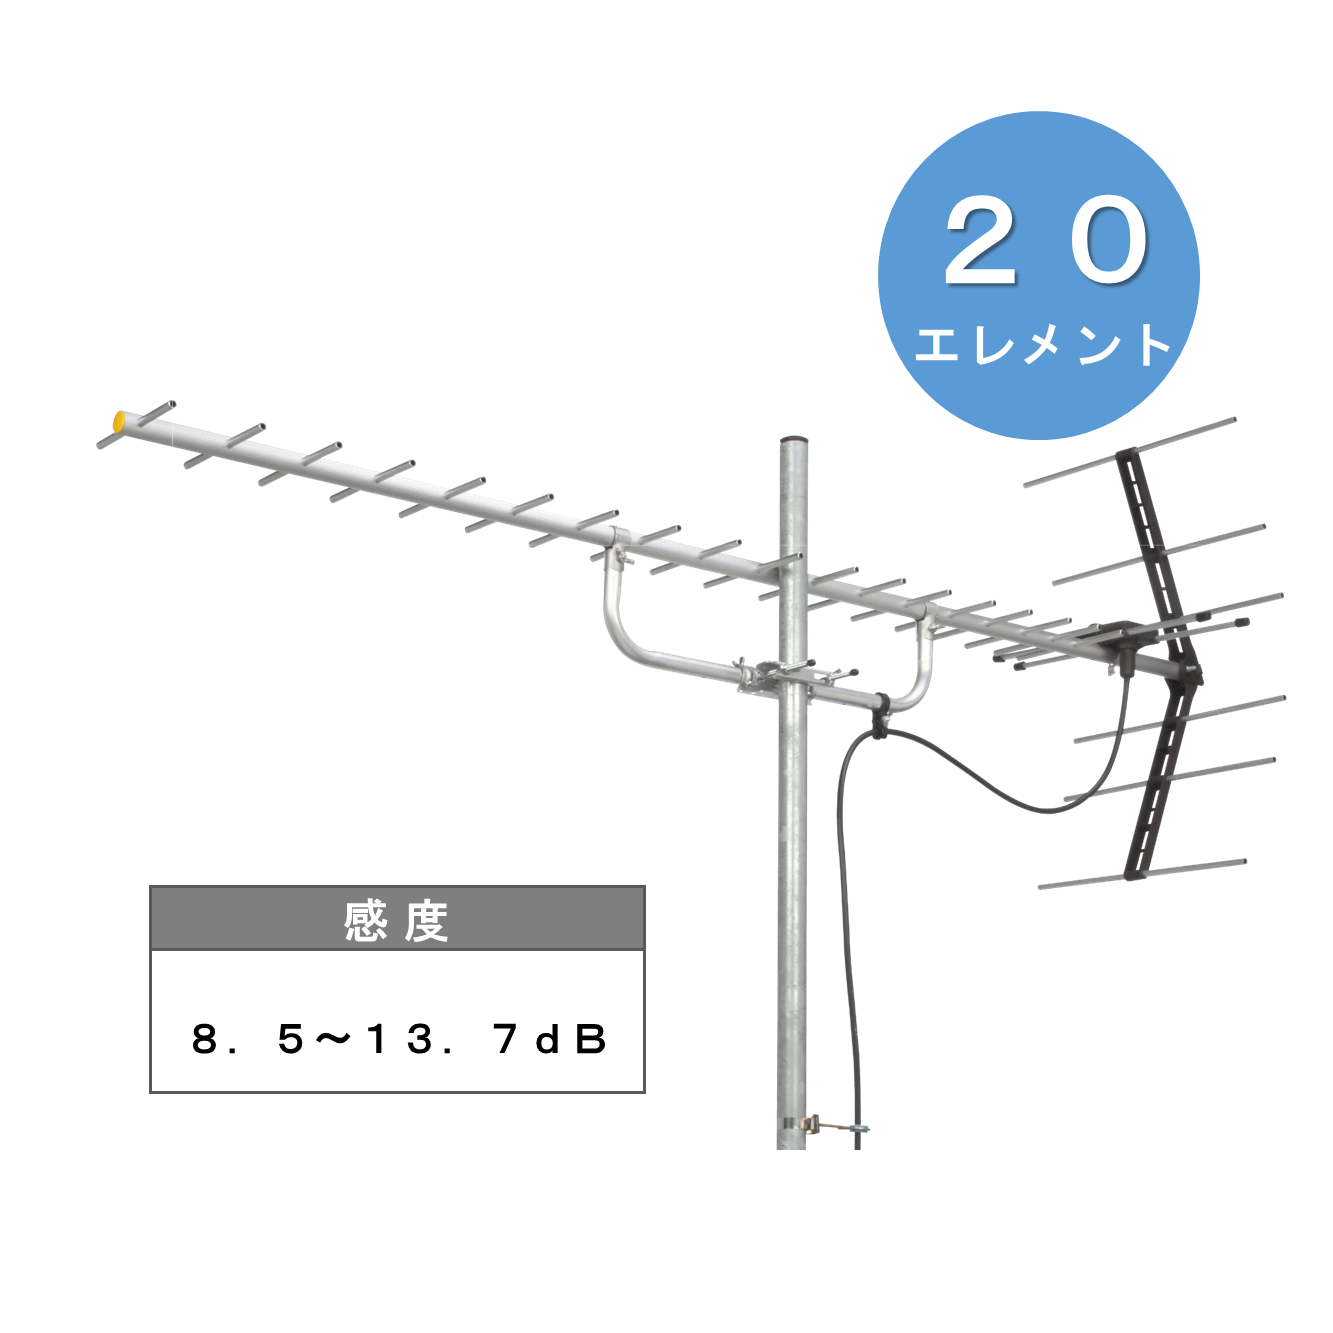 U206(20素子): テレビ受信機器|マスプロ電工